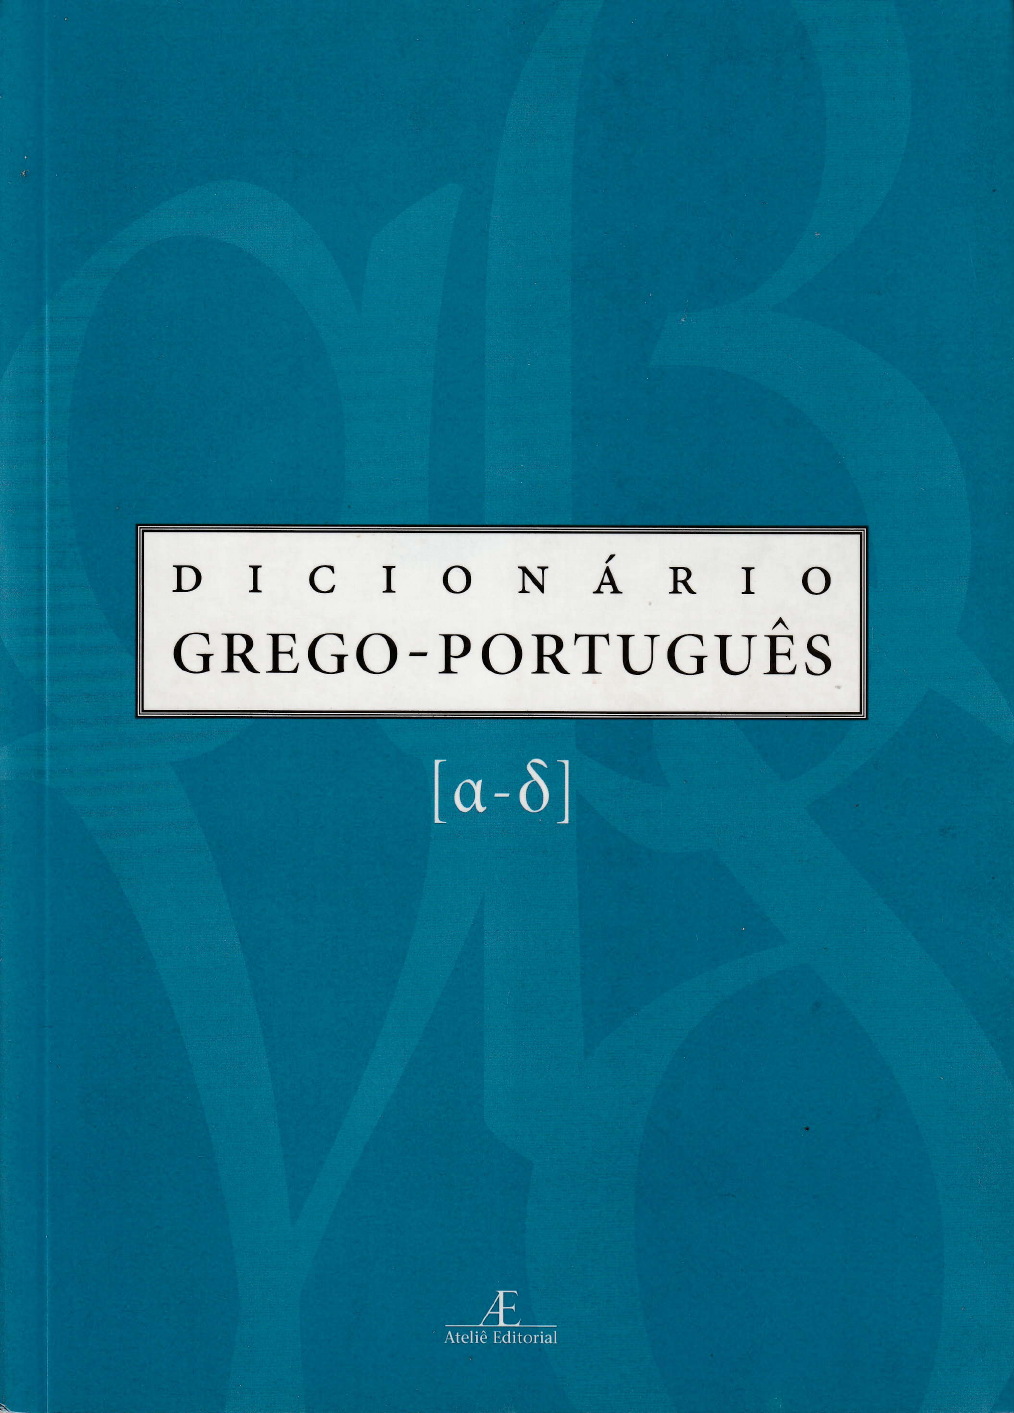 Vu - Dicio, Dicionário Online de Português